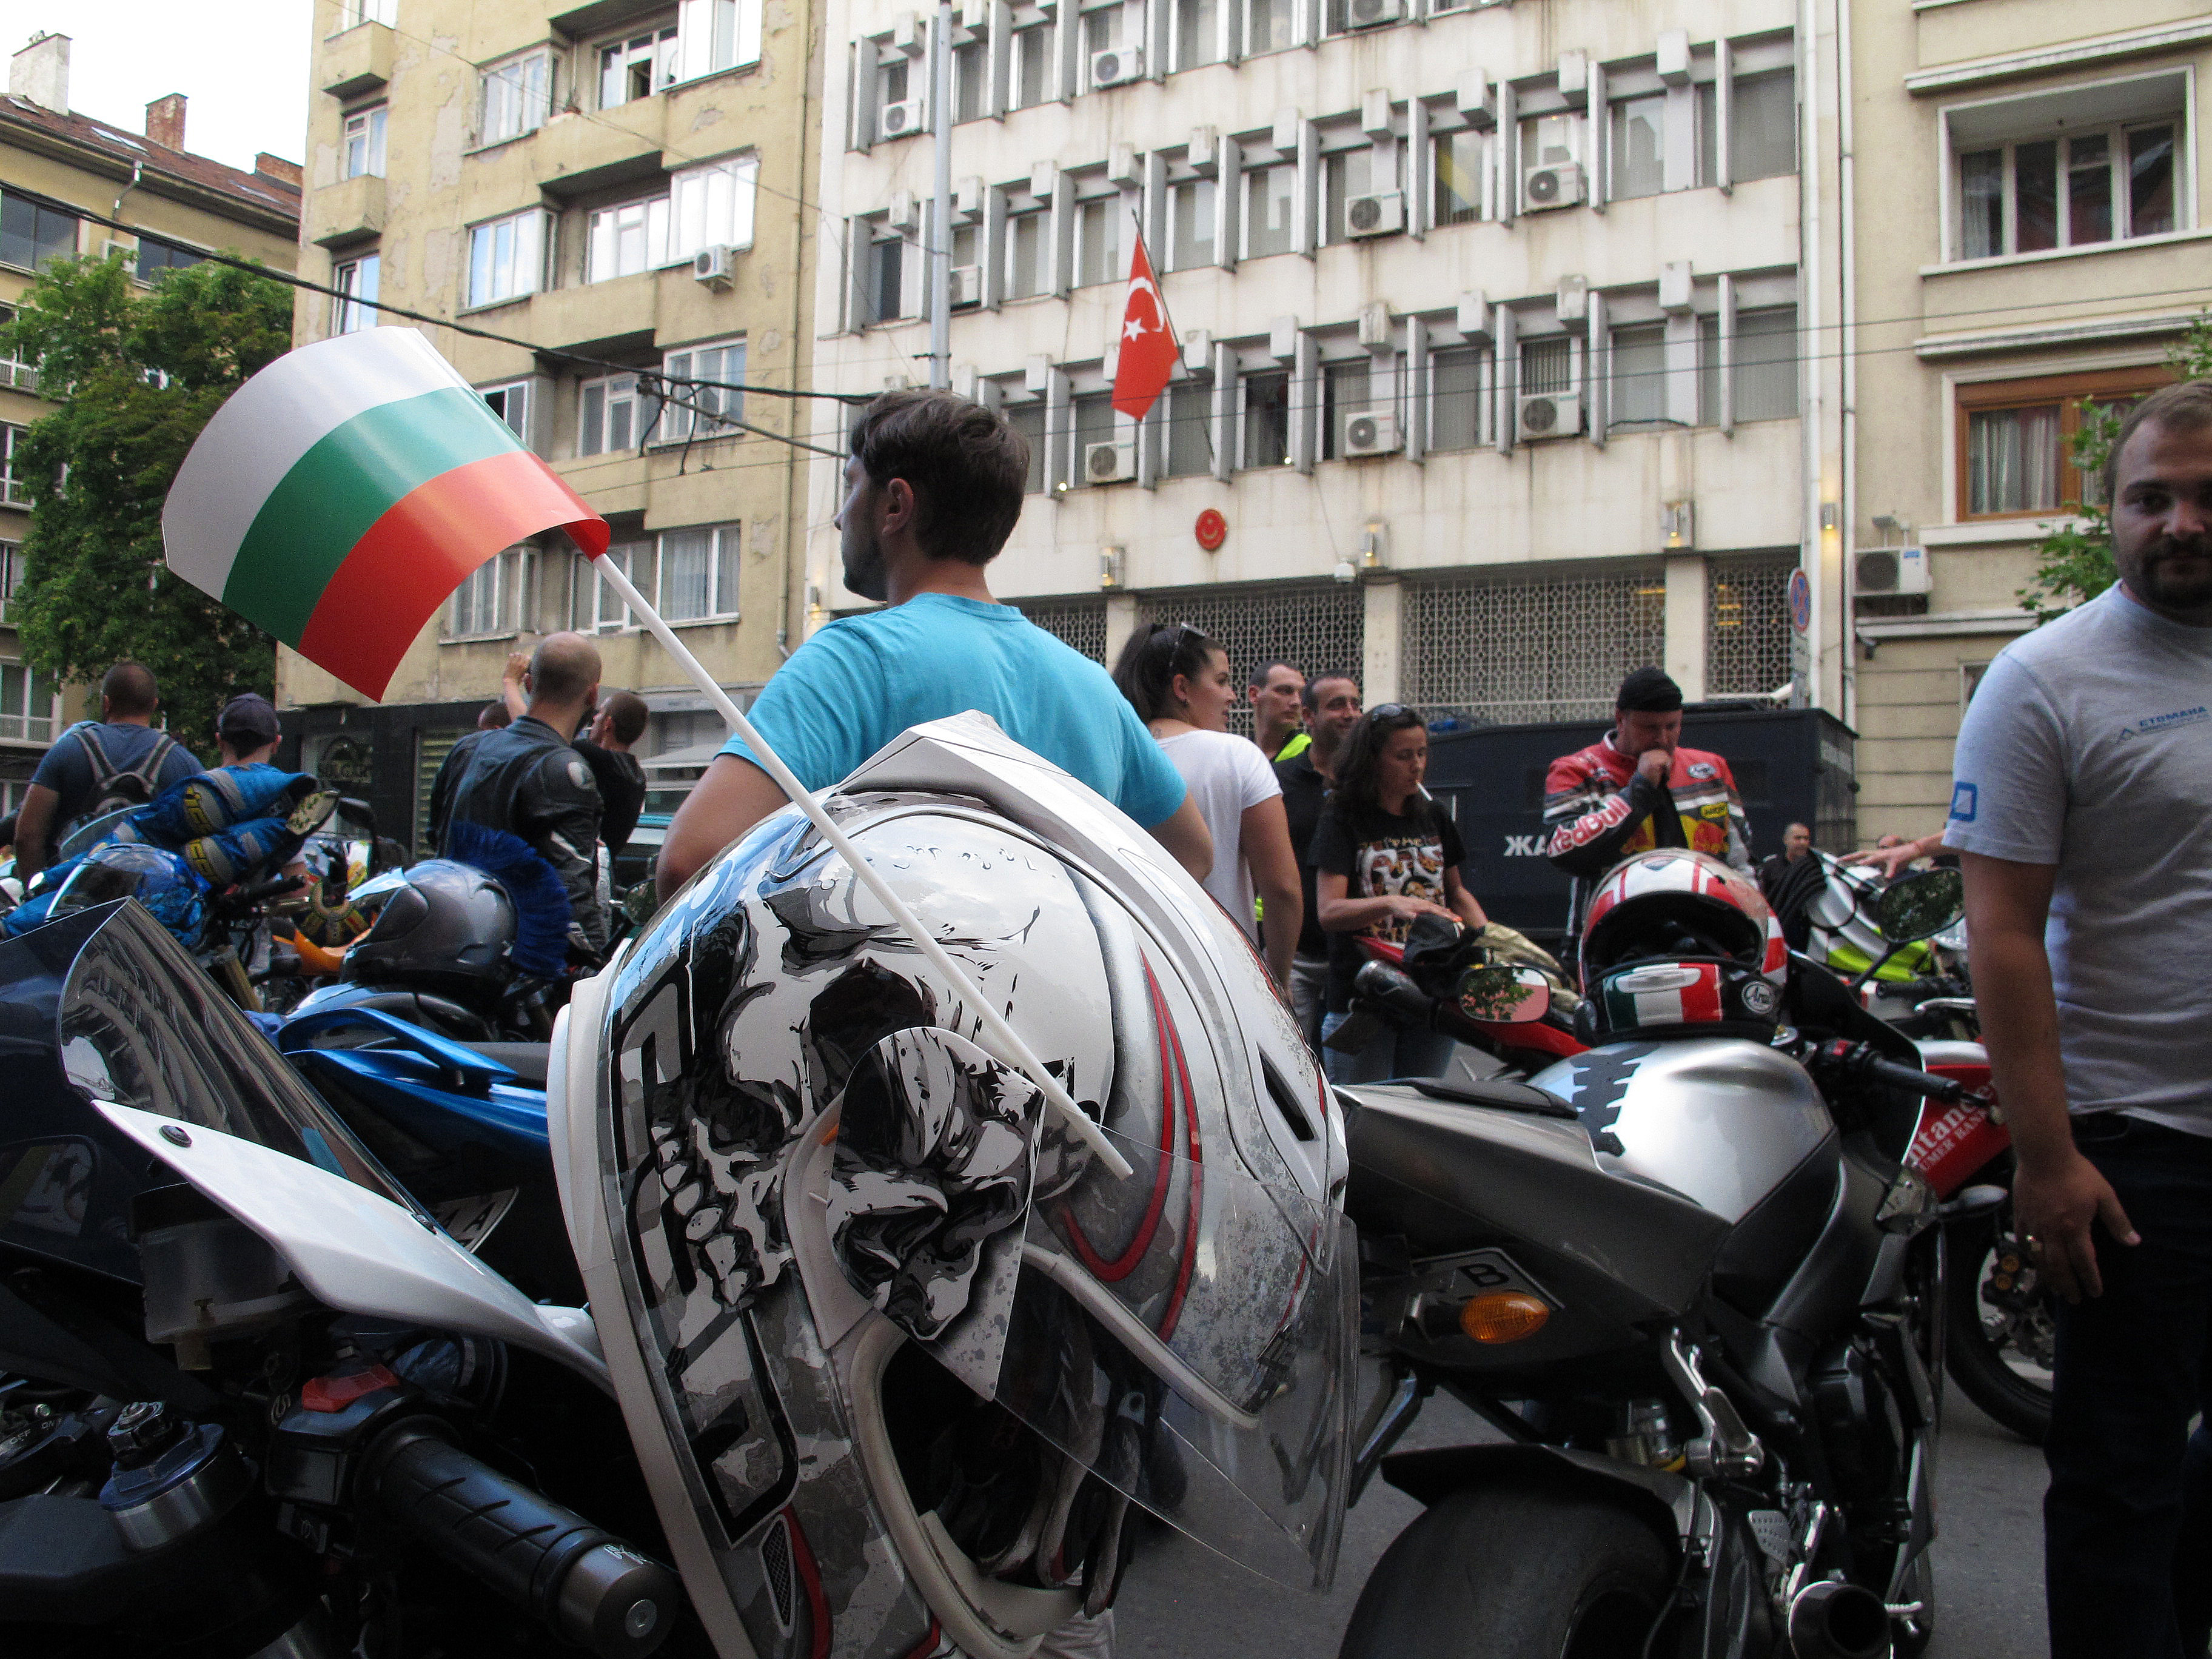 Пред сградата на турското посолство в столицата се събраха мотористи, които протестираха заради укрилият се от правосъдието турс